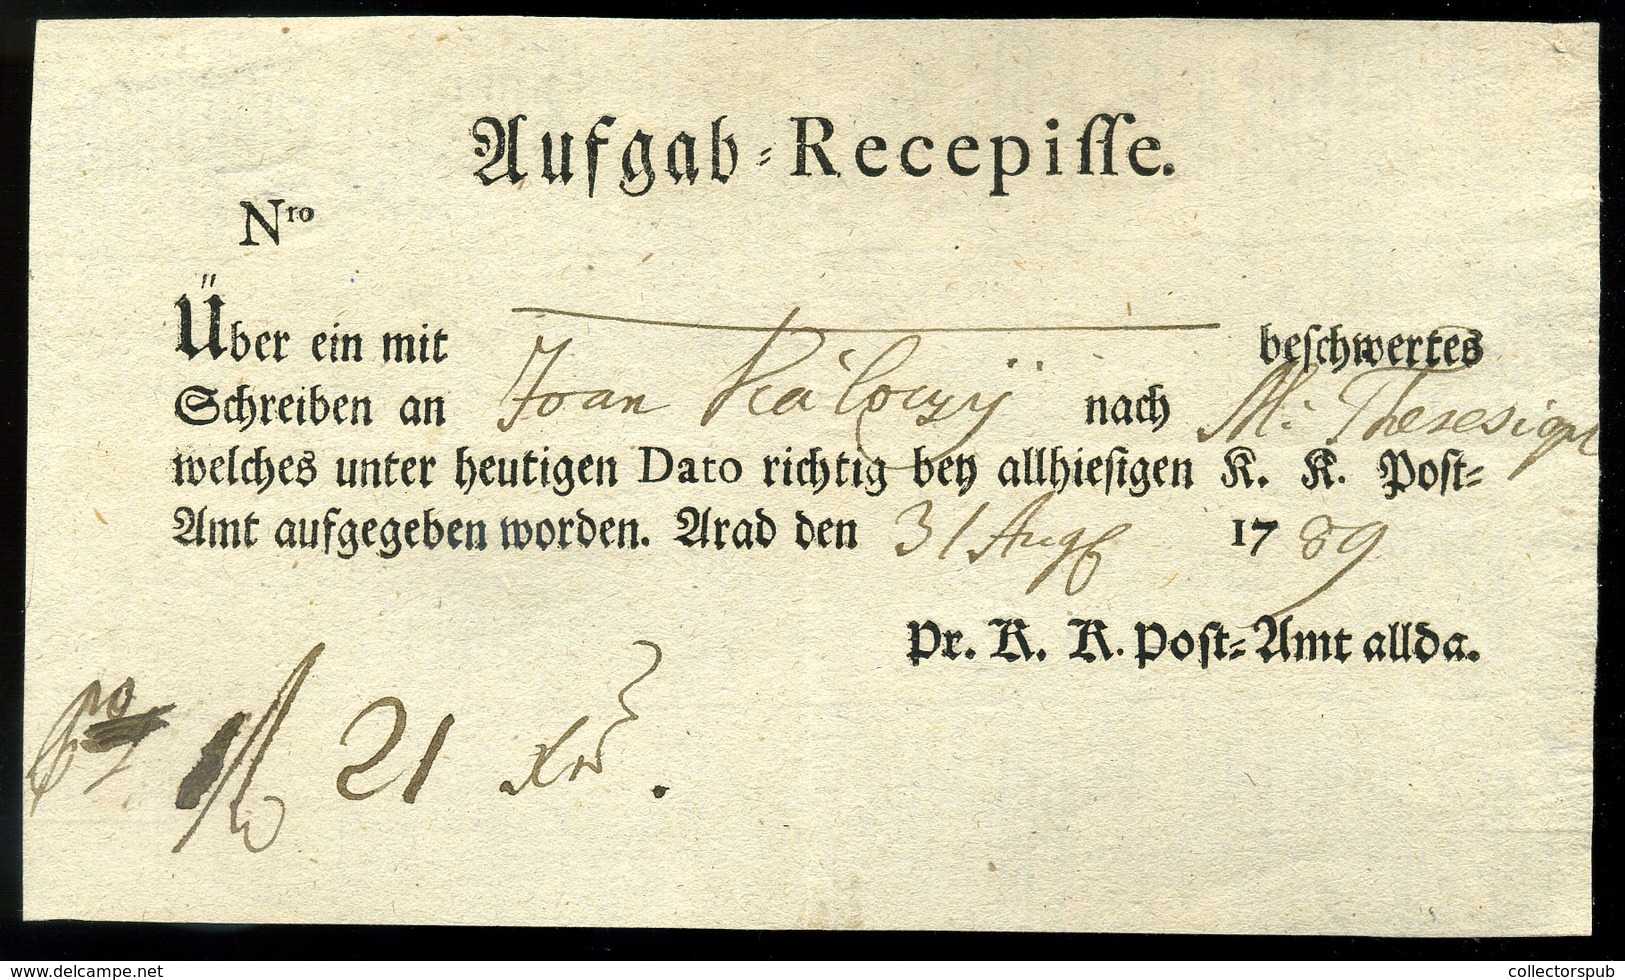 K.K.Post=Amt Arad 1789. Postamesteri Feladóvény 'Recepisse' , Szép és Ritka Darab! - ...-1850 Prephilately